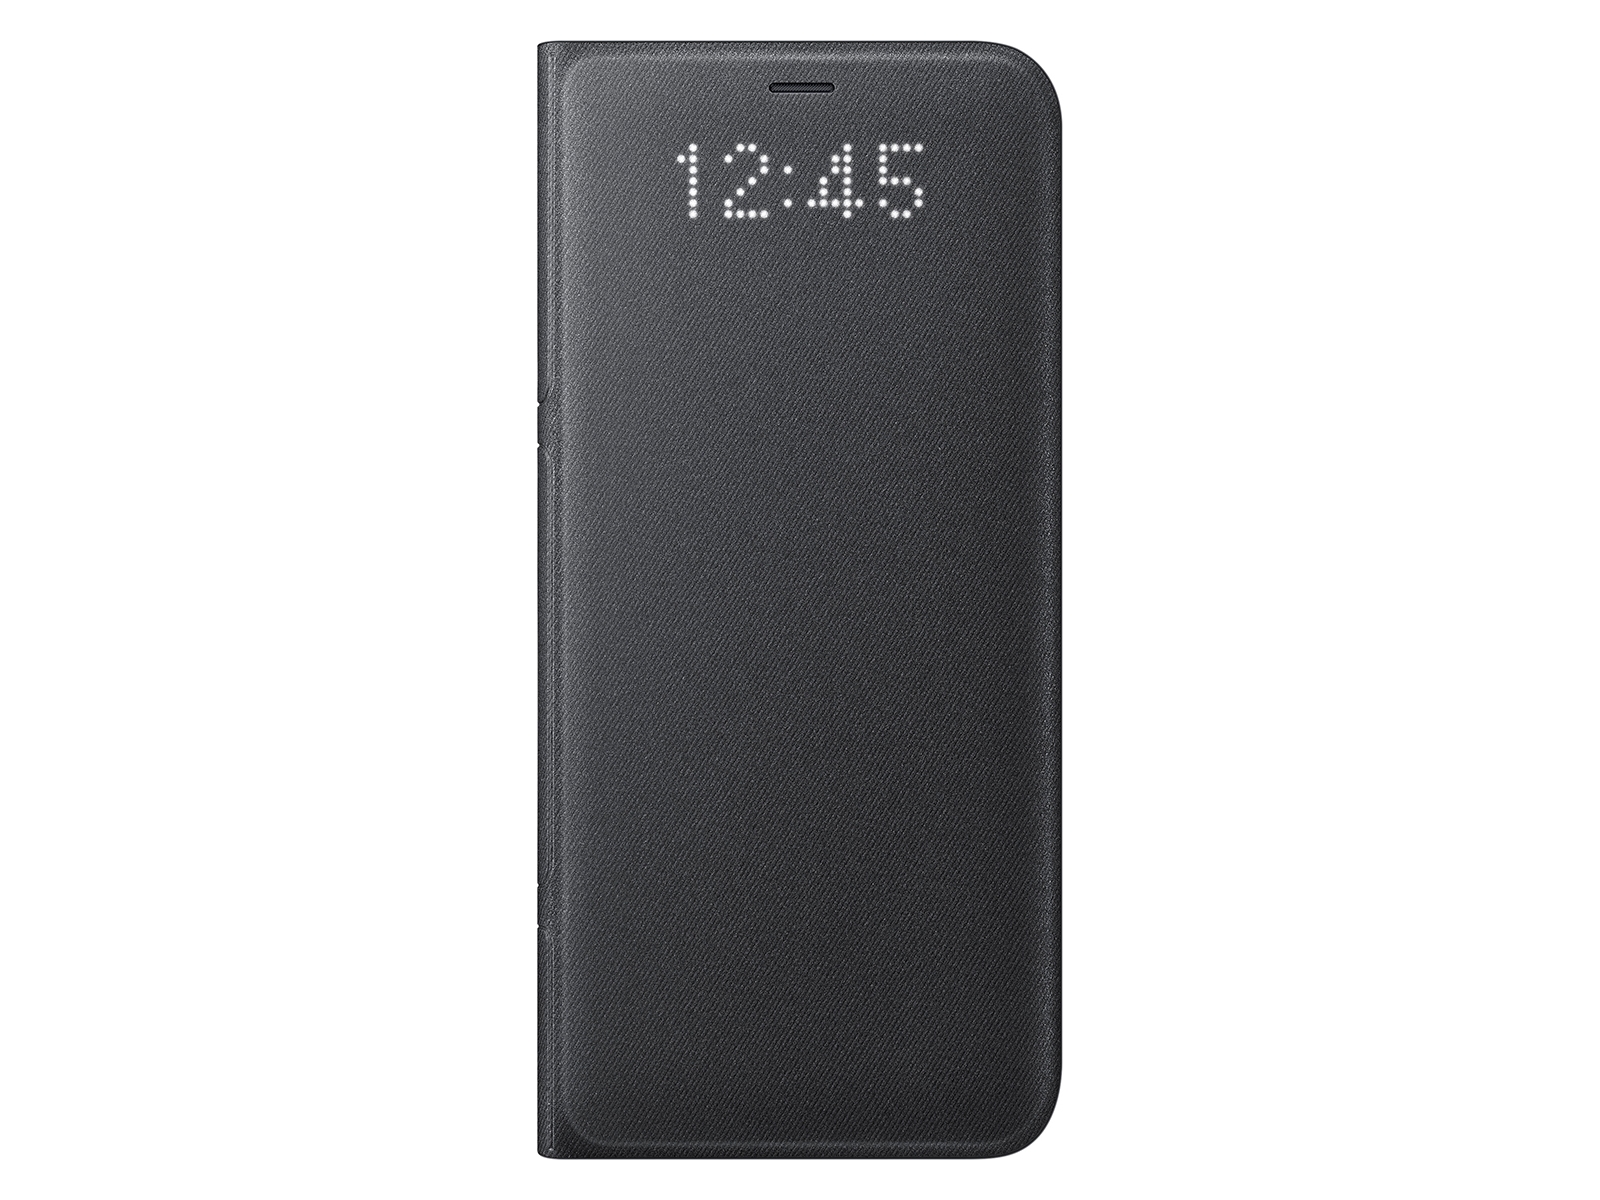 Moske At accelerere Havbrasme EF-NG950PBEGUS | Galaxy S8 LED Wallet Cover Black | Samsung Business US